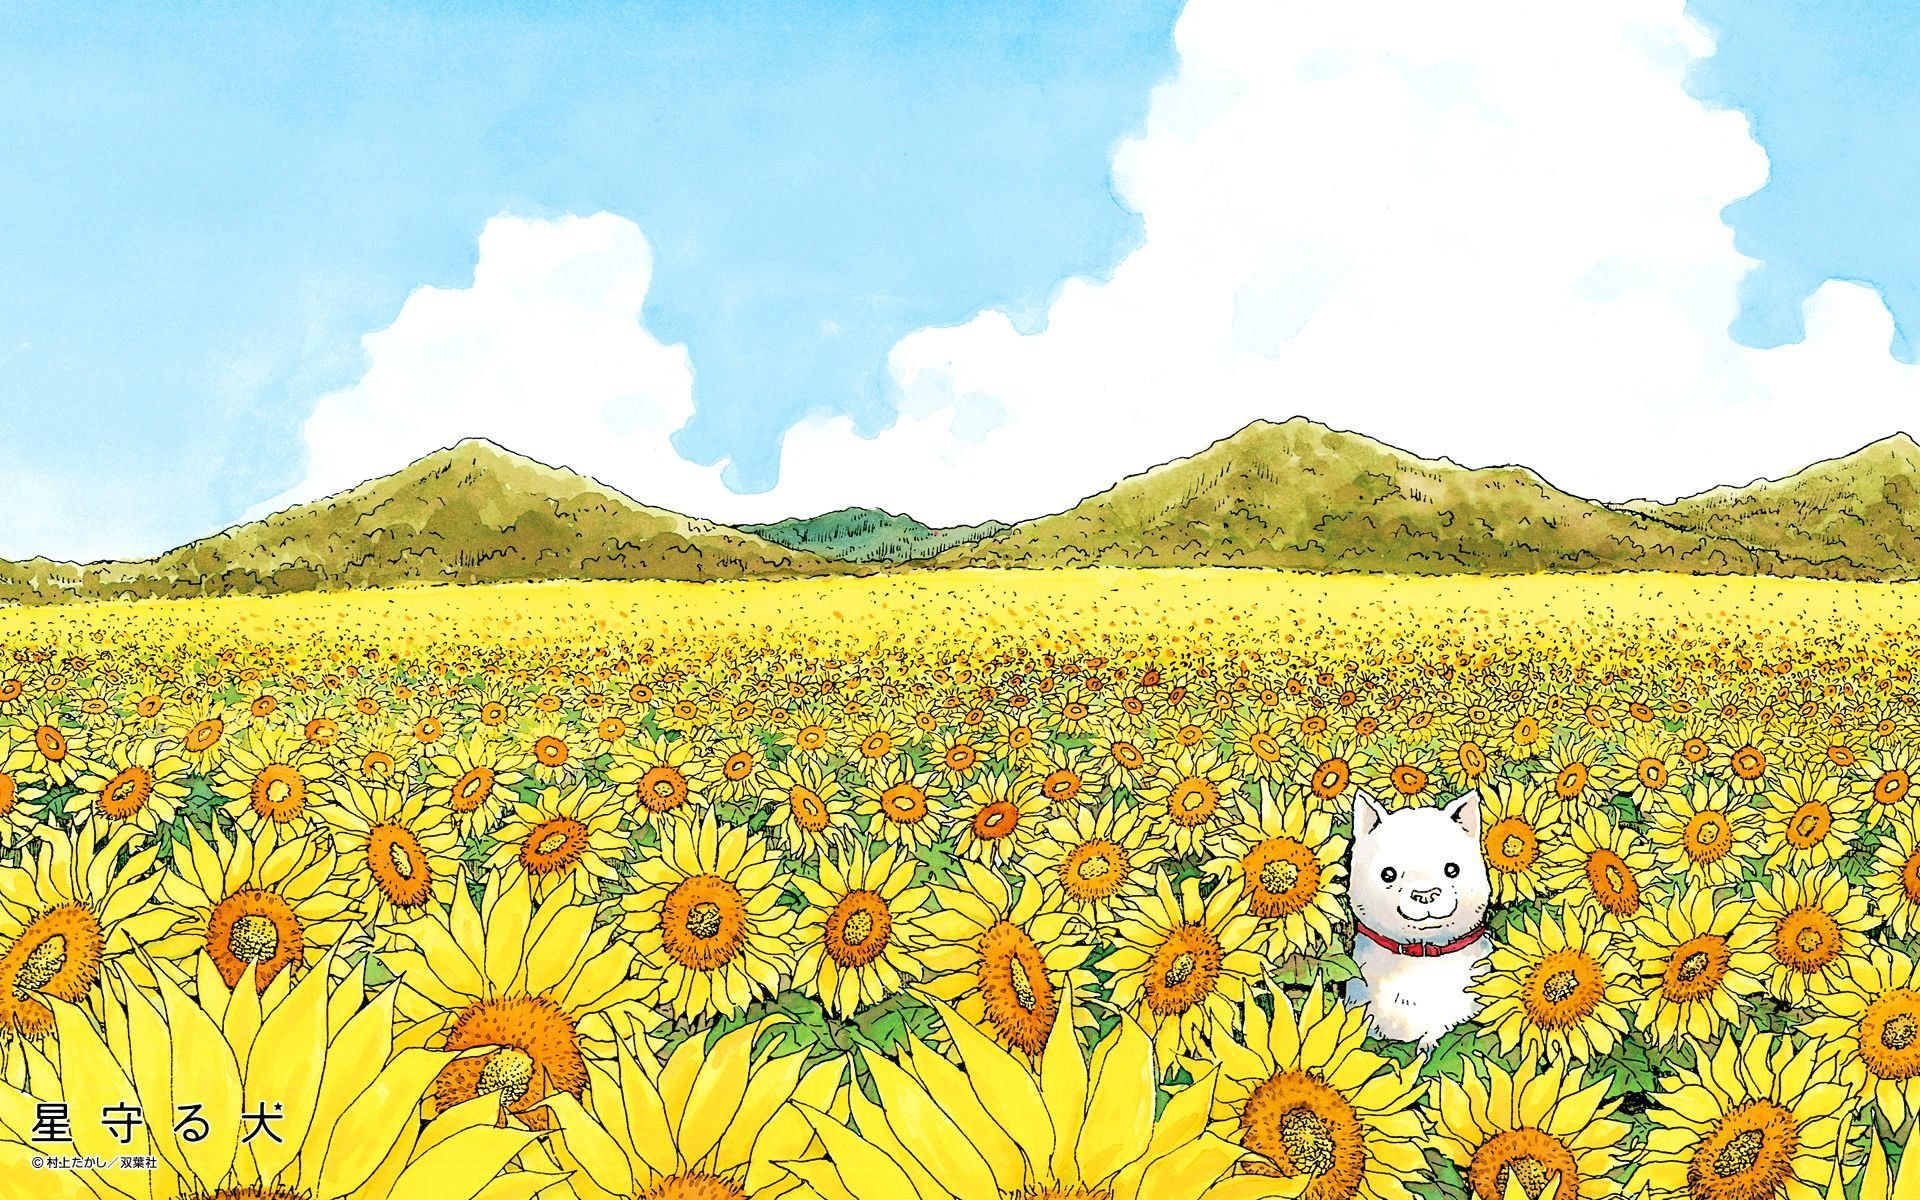 Murakami 4K wallpaper for your desktop or mobile screen free